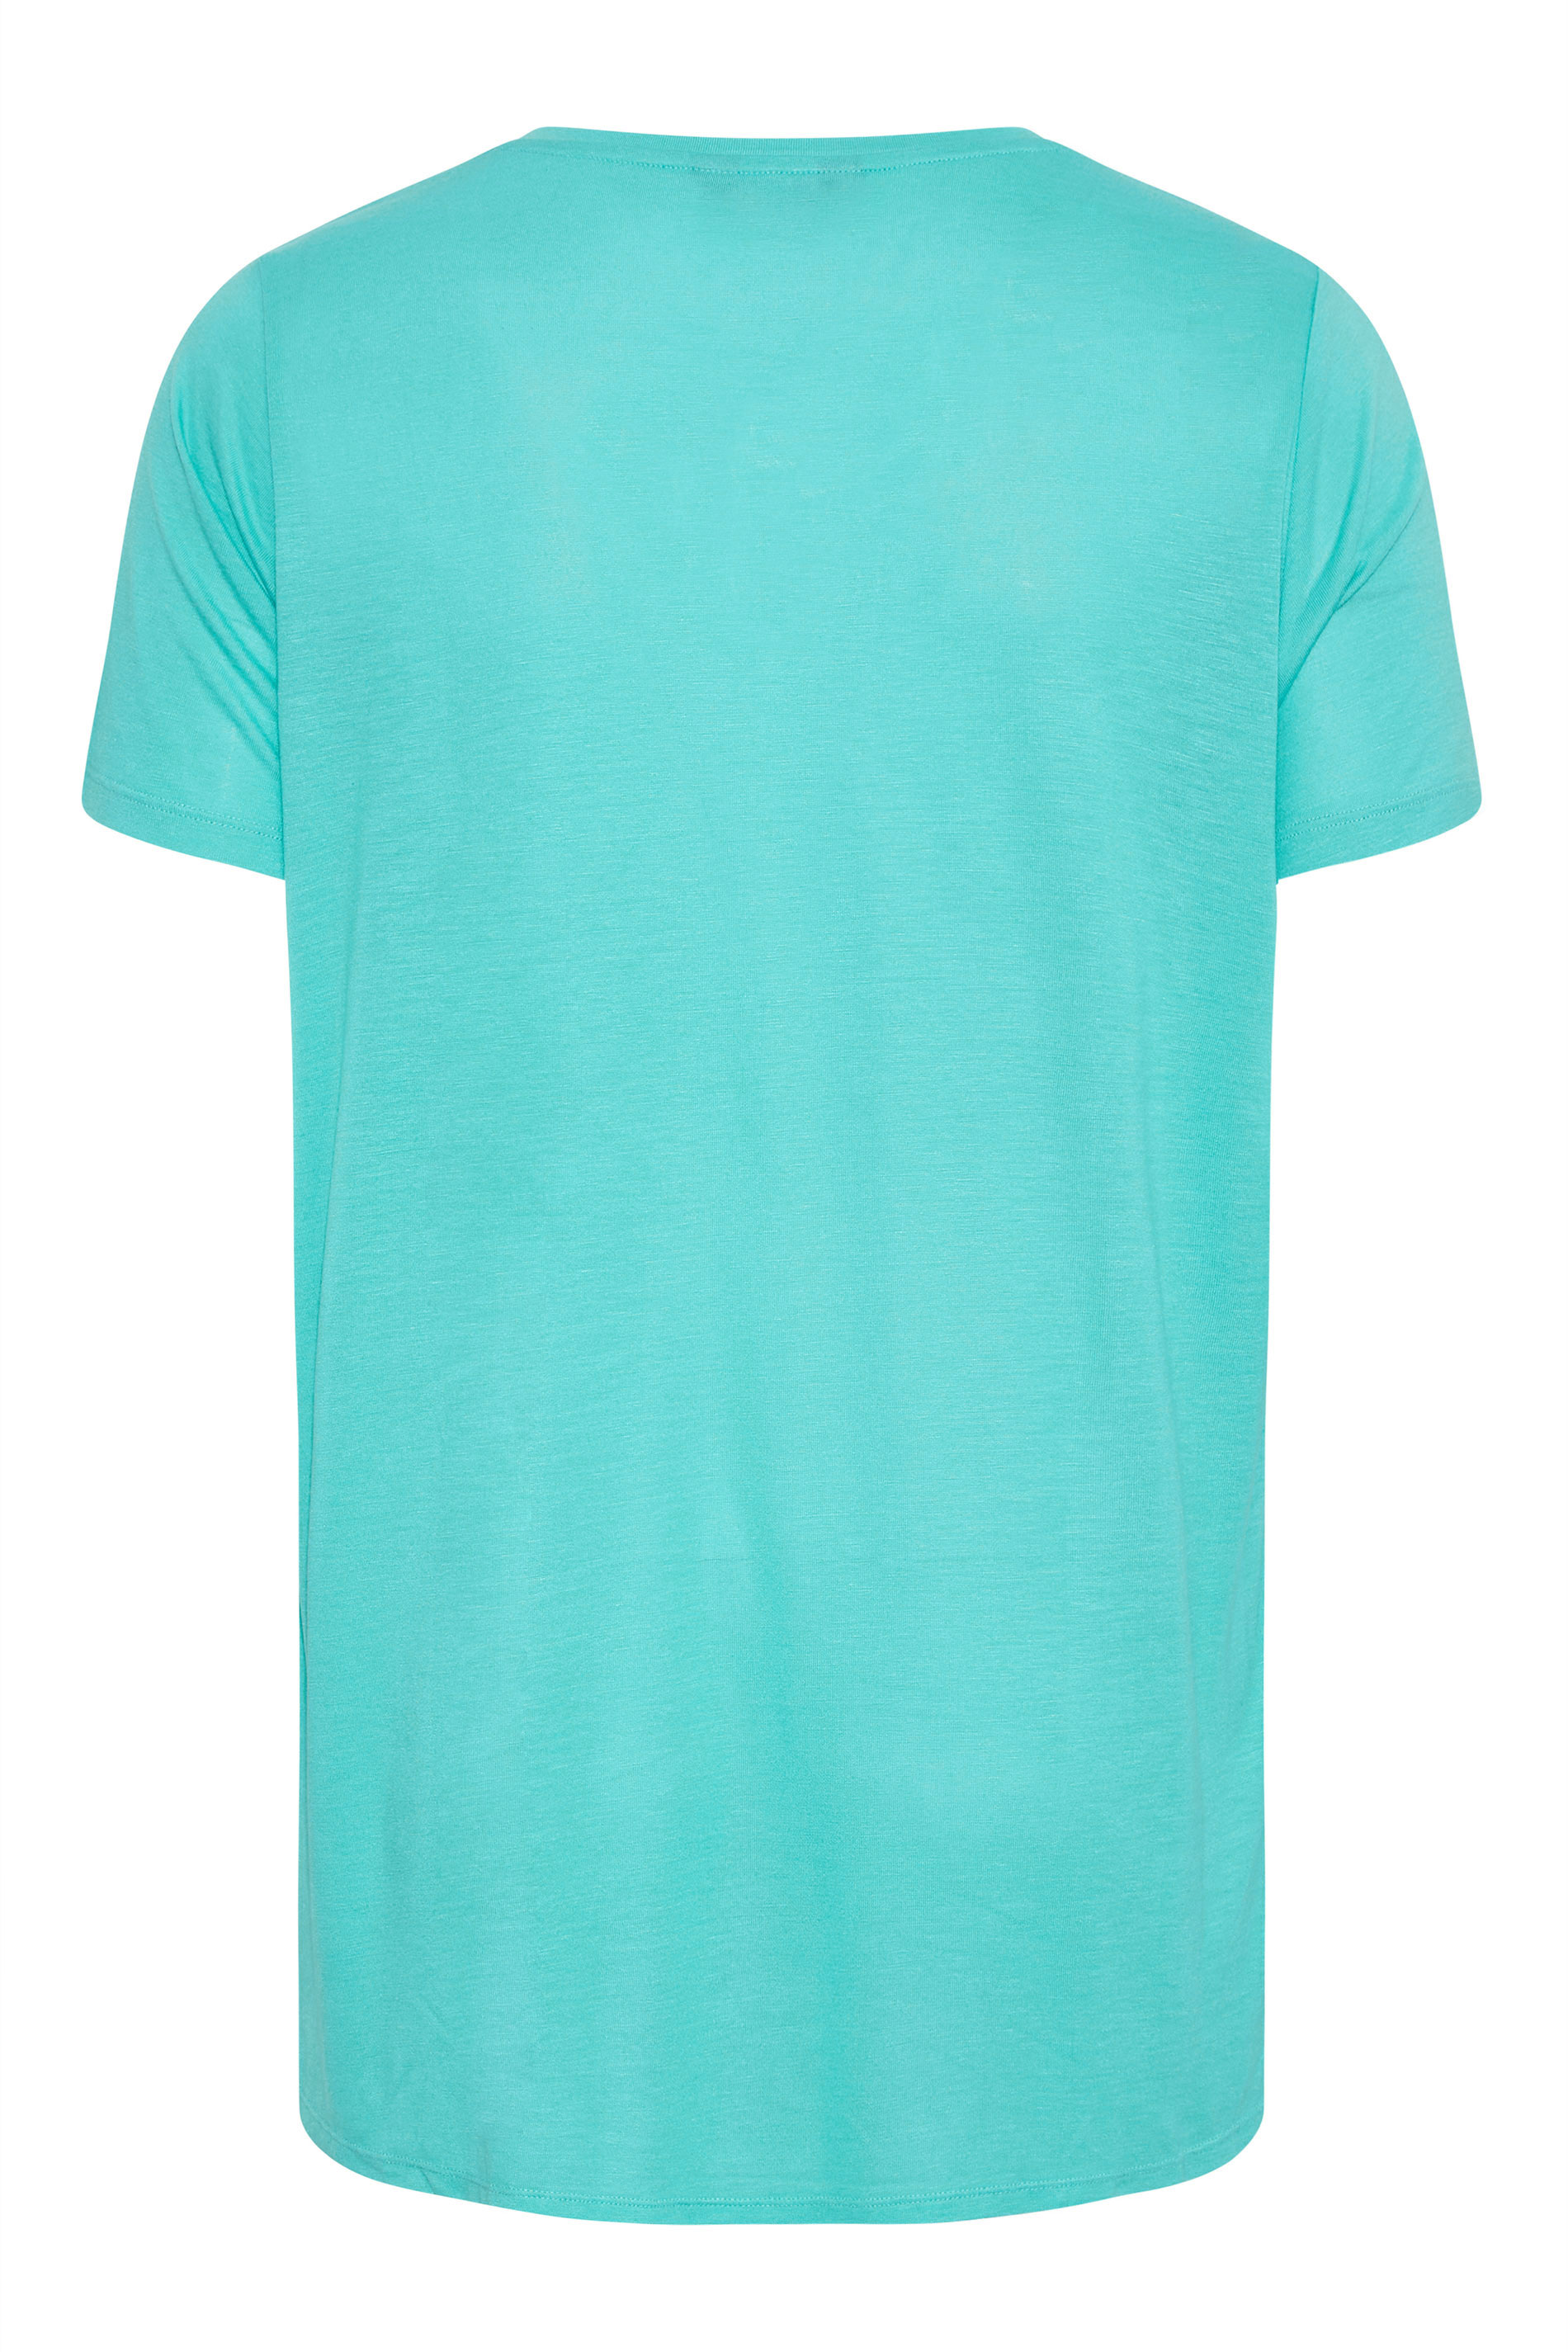 Grande taille  Tops Grande taille  T-Shirts | T-Shirt Bleu Turquoise Brodé Aztèque à Ficelle - SD43850